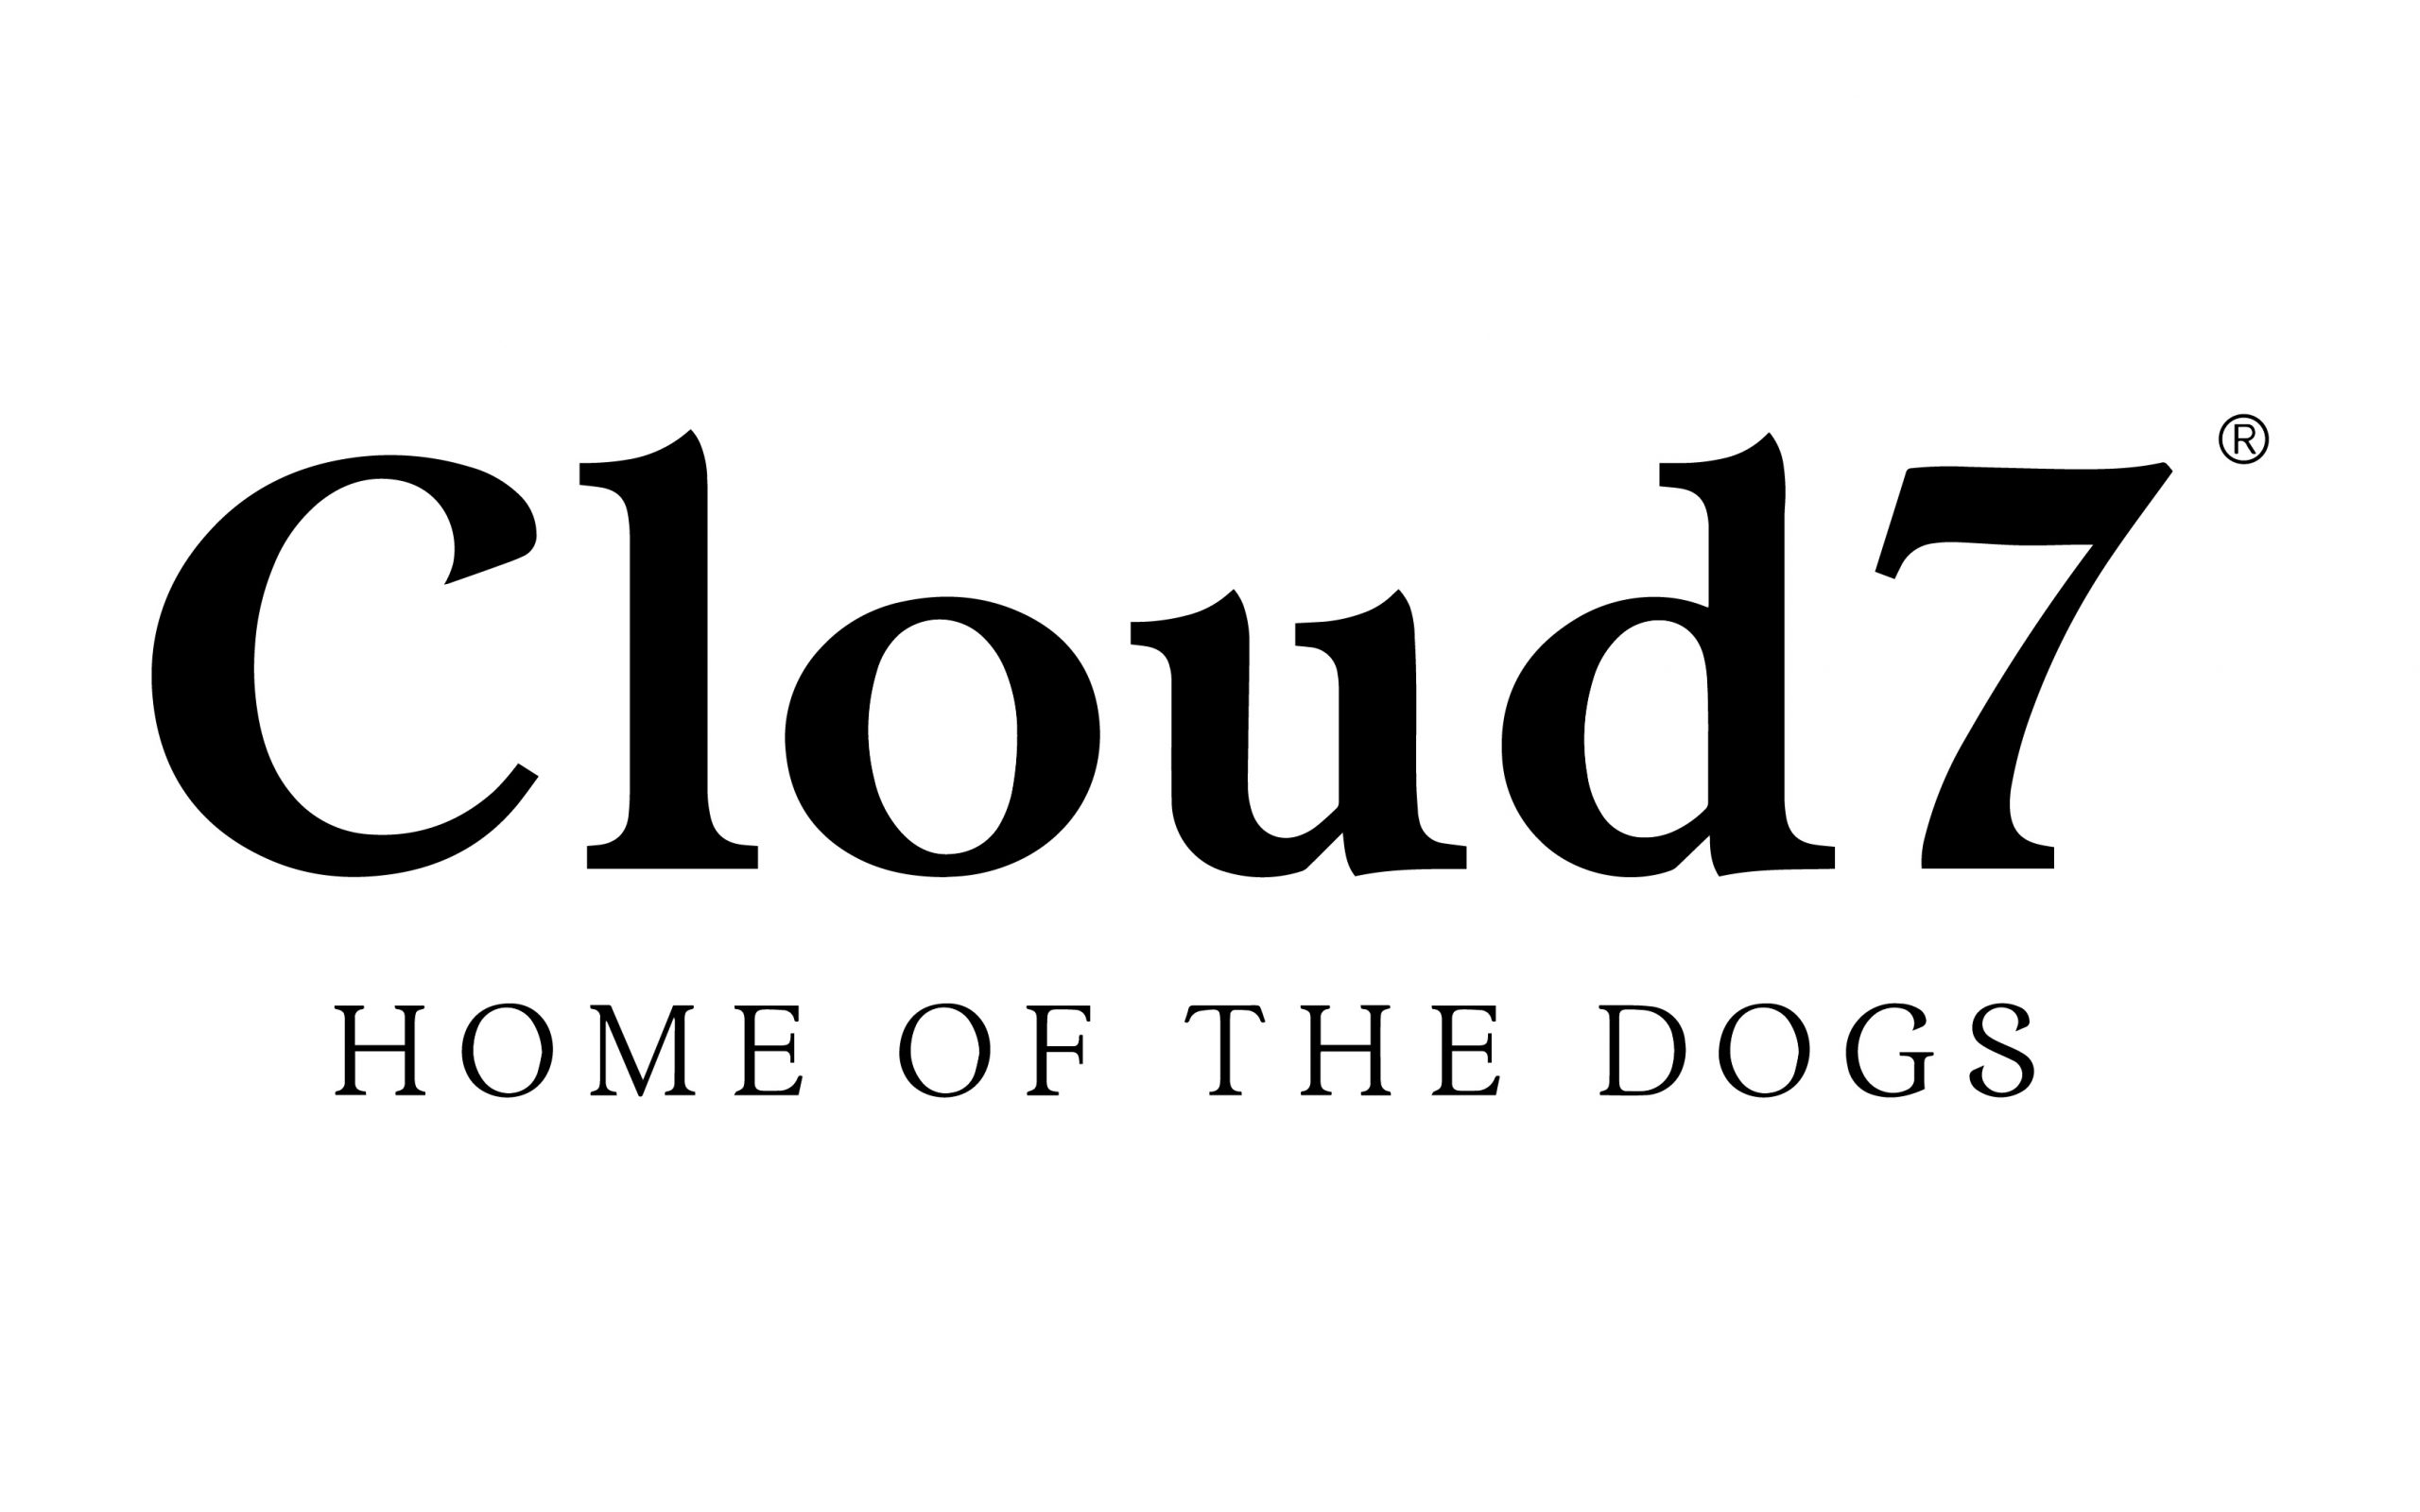 Cloud7 in Fürth kaufen